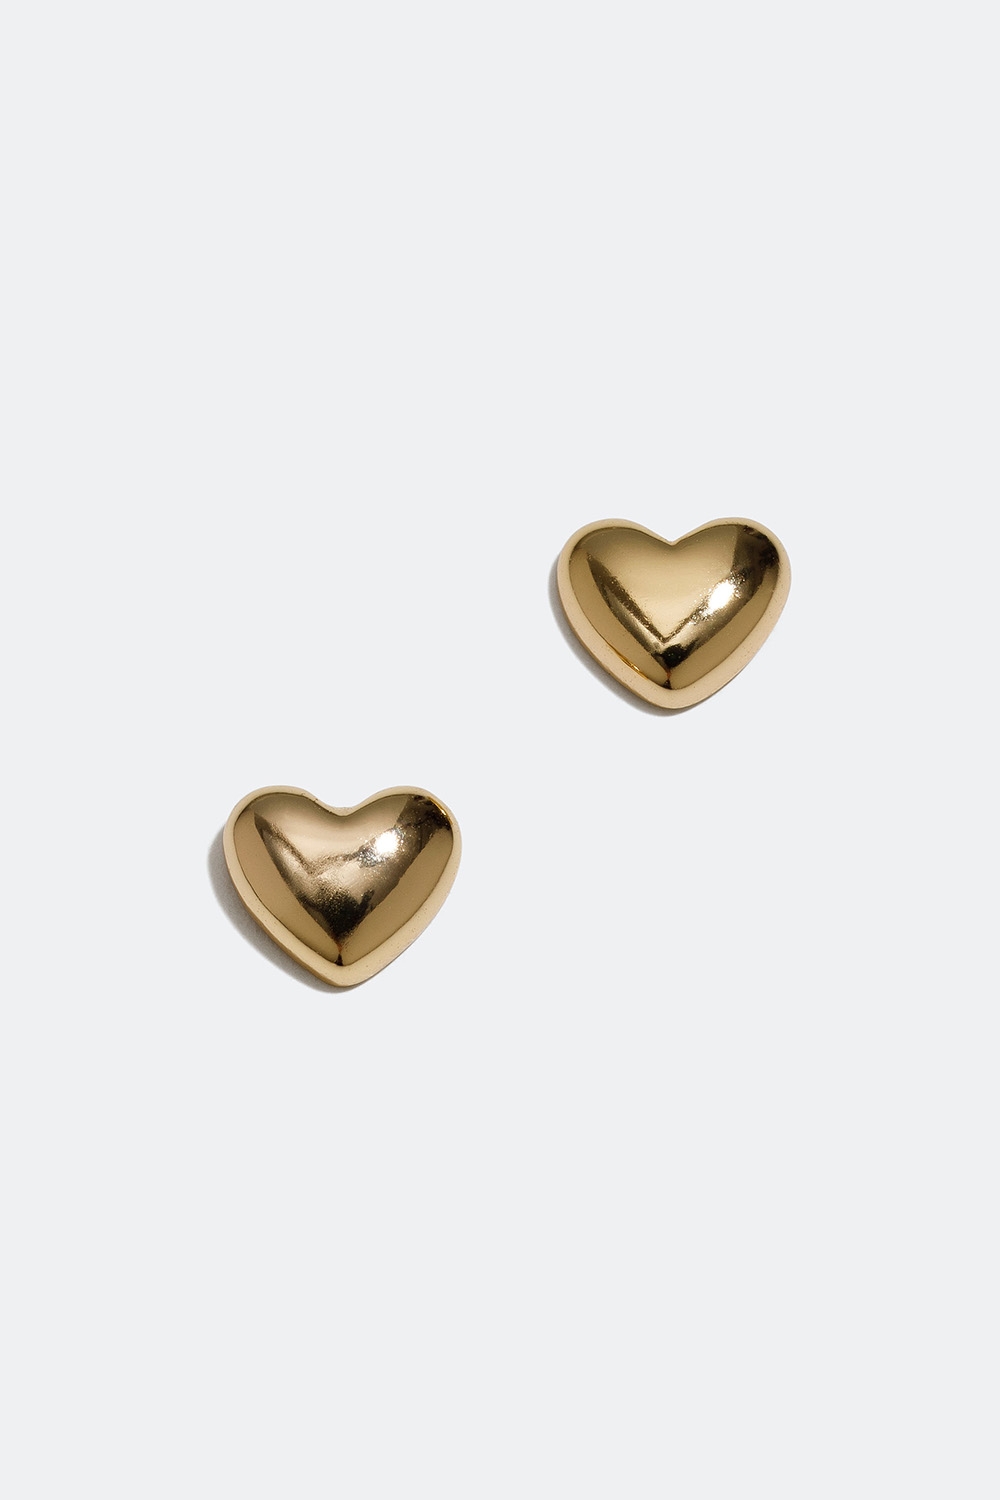 Små studs med hjärtan förgyllda med 18k guld i gruppen Barn / Barnsmycken / Barnörhängen hos Glitter (405000092002)